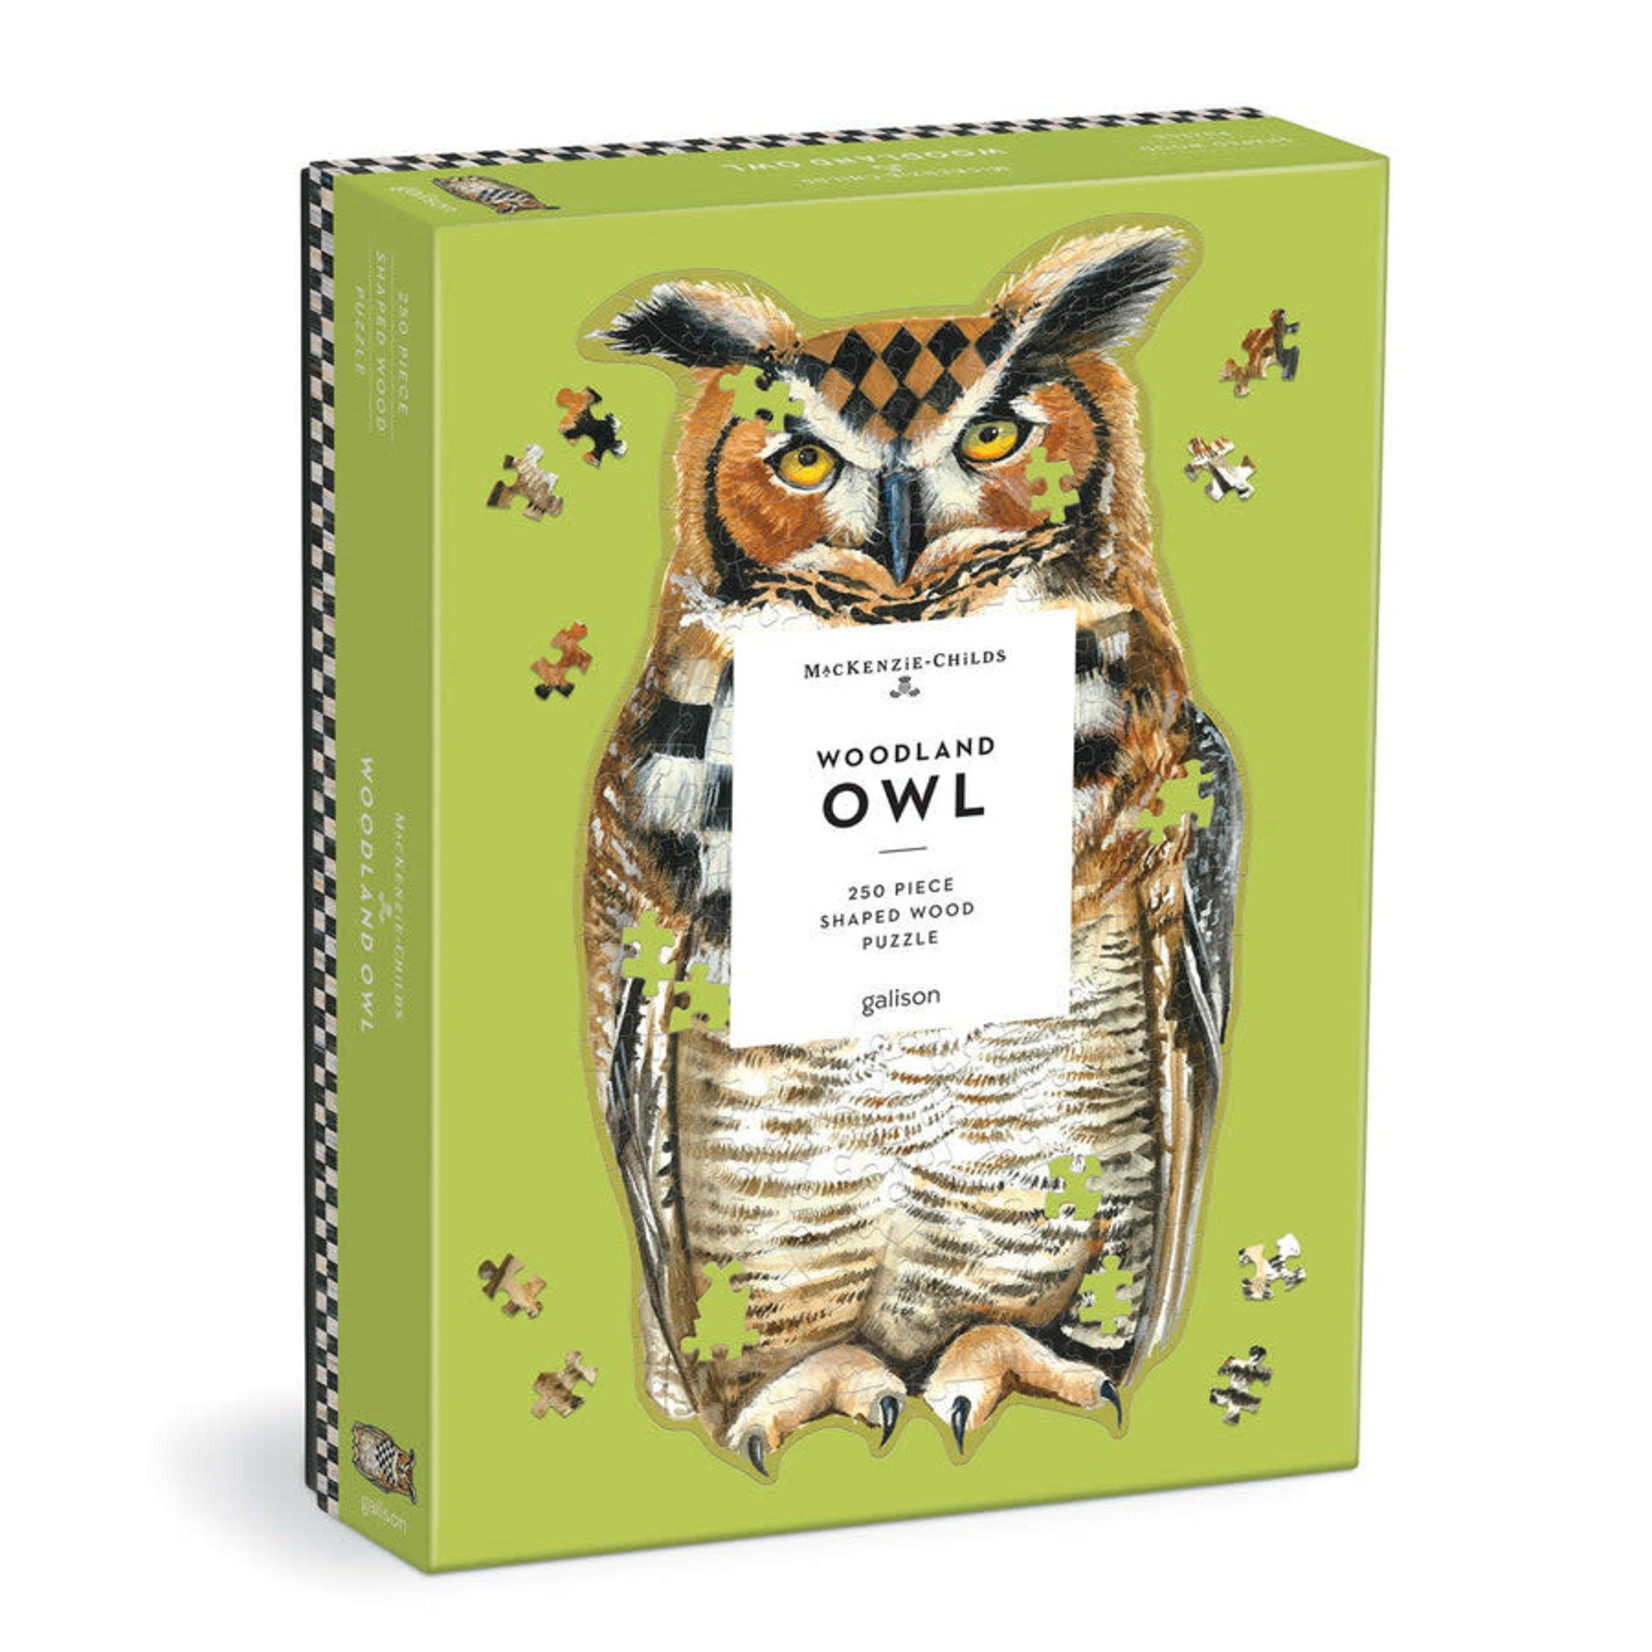 Galison Books MacKenzie-Childs Woodland Owl 250 Piece Shaped Wood Puzzle